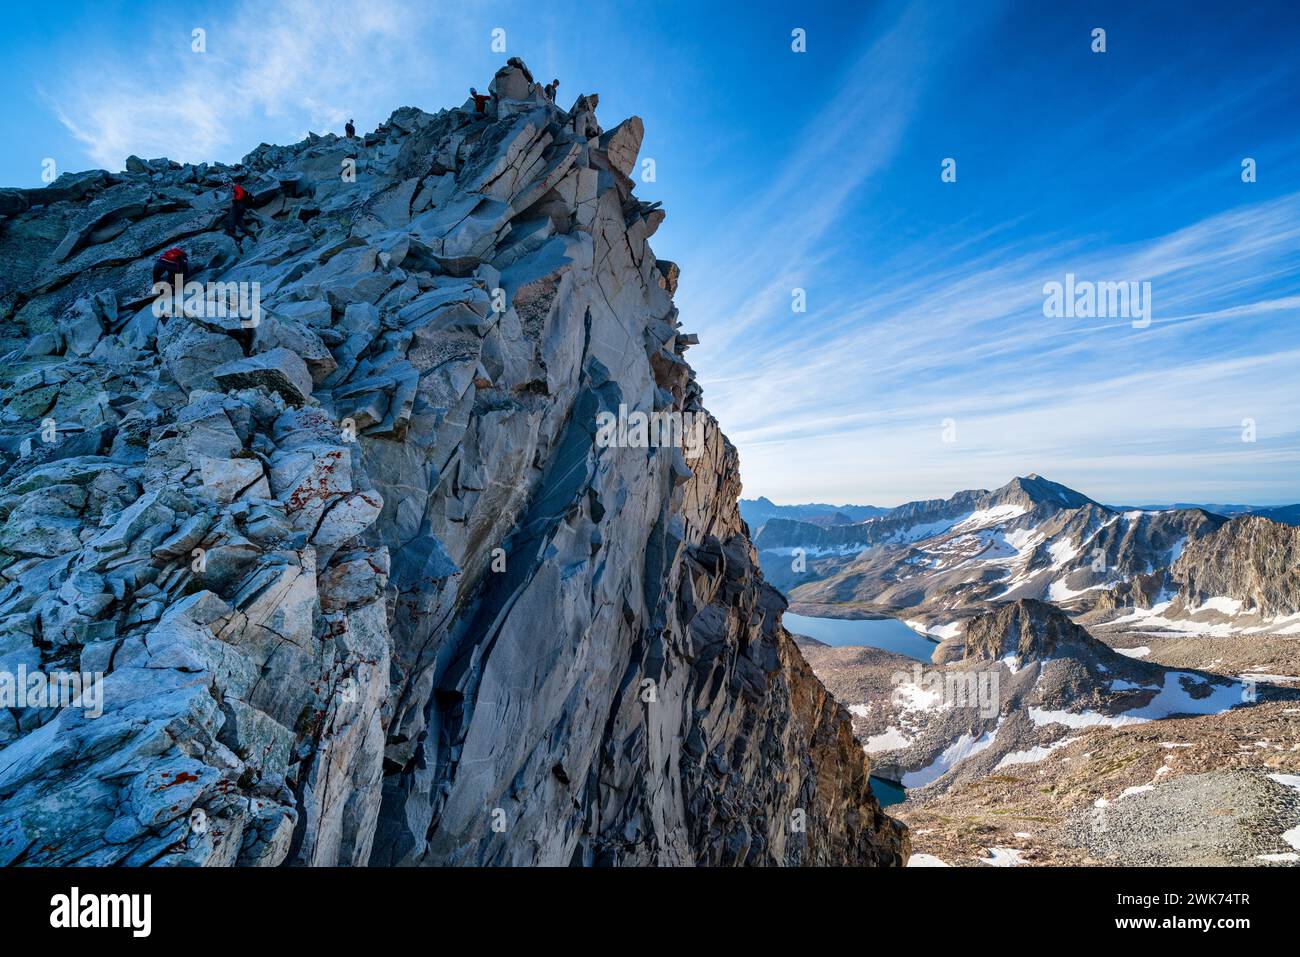 Views while mountain climbing on Capitol Peak mountain, Colorado, USA Stock Photo